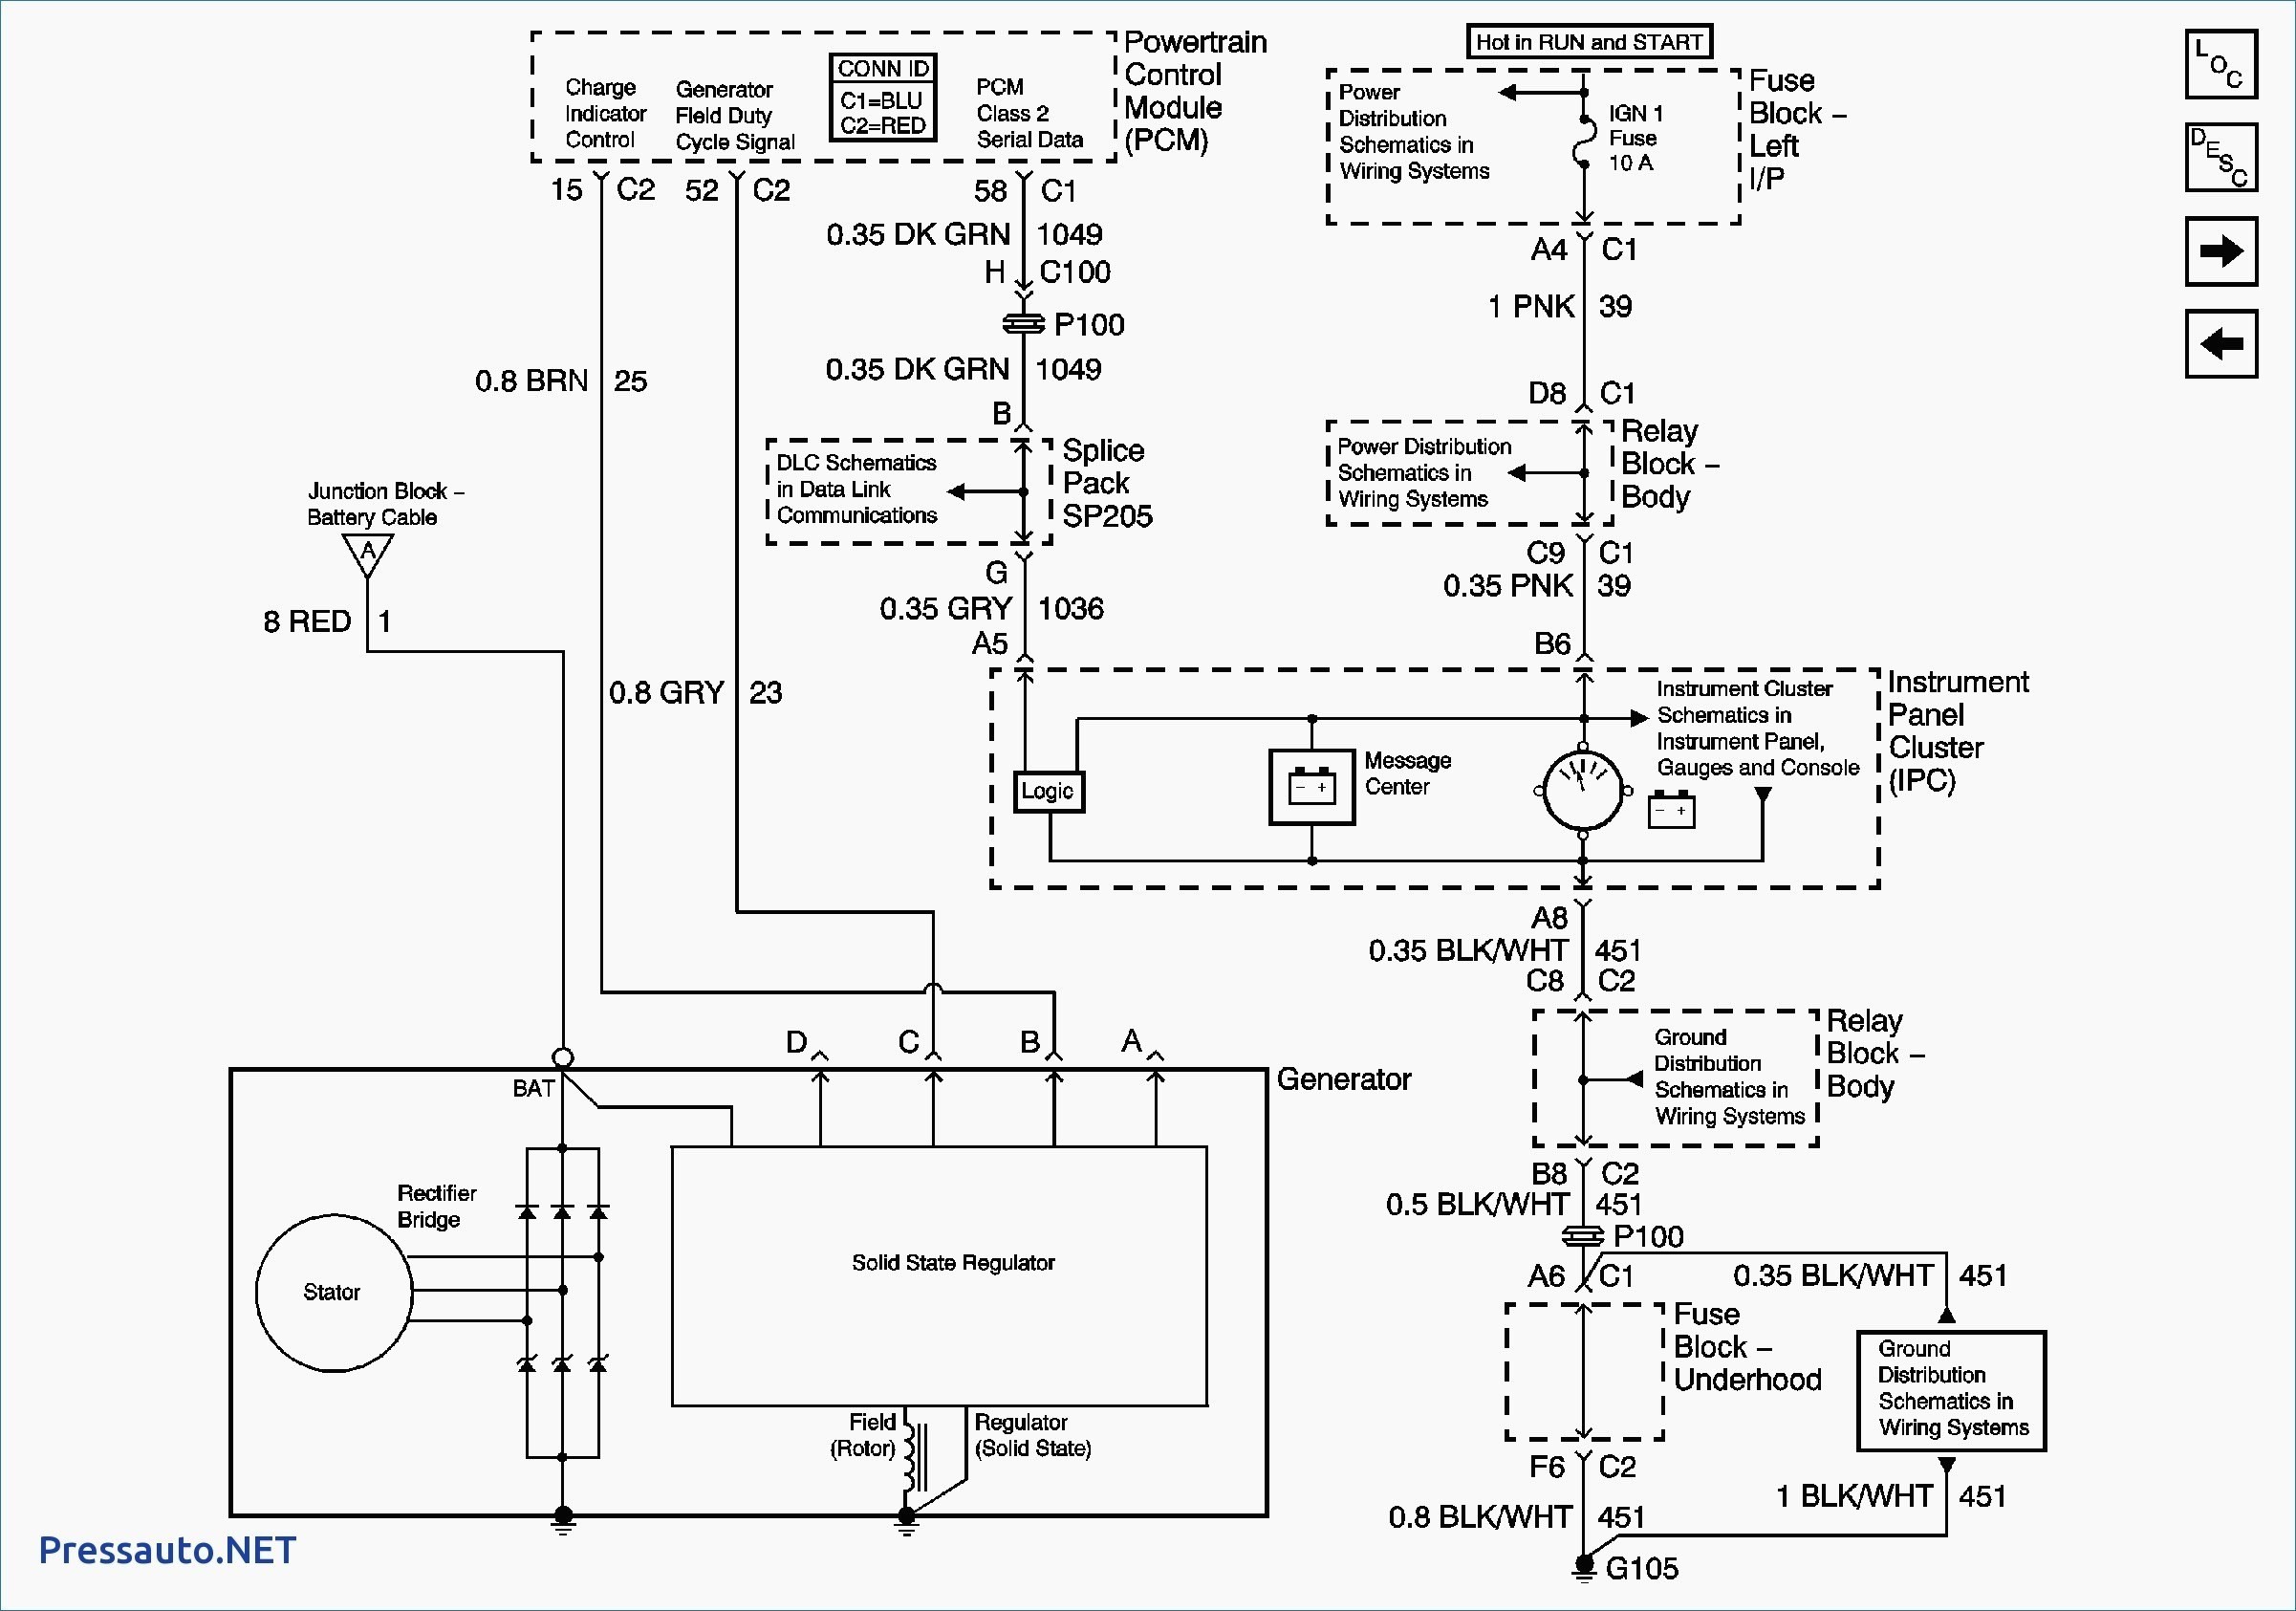 Wiring Diagram For Wilson Alternator New Wiring Diagram For Motorola Alternator Free Download Wiring Diagram